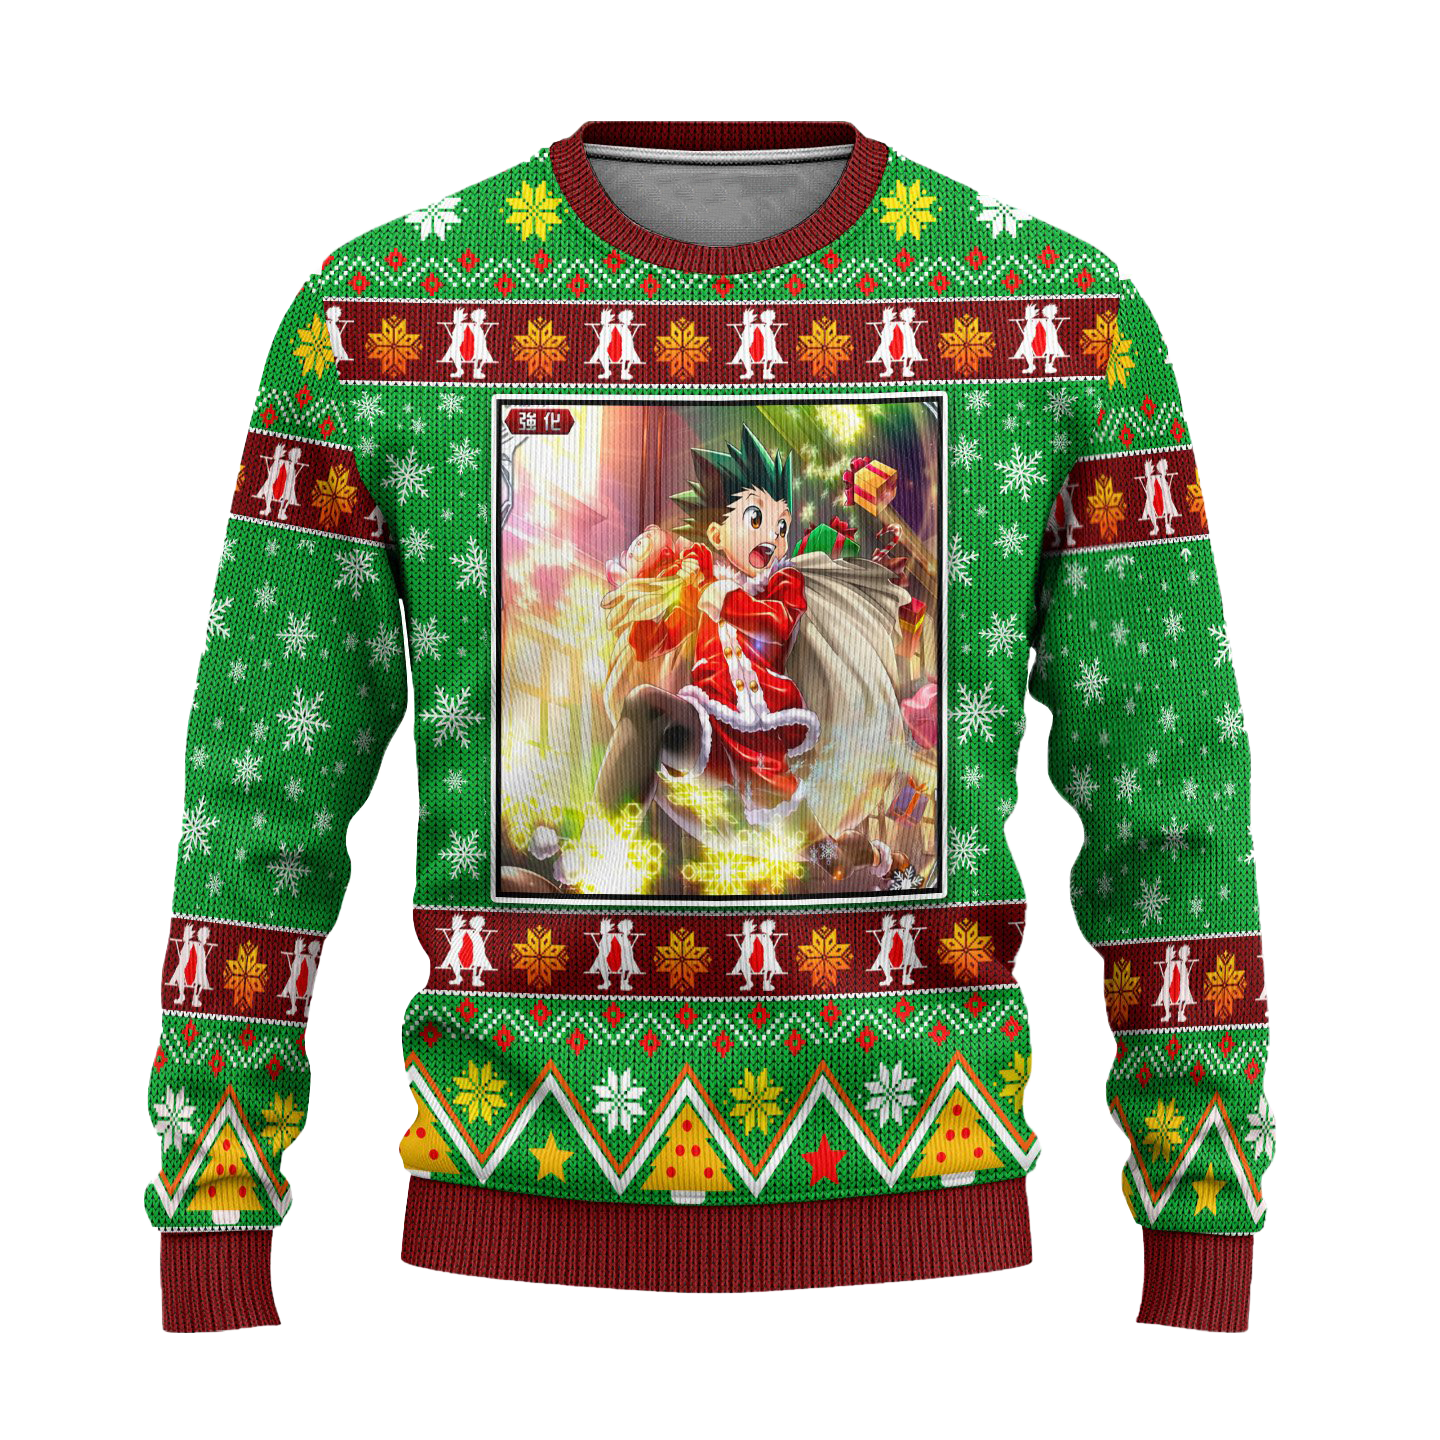 Gon Freecss Anime Ugly Christmas Sweater Hunter x Hunter Xmas Gift